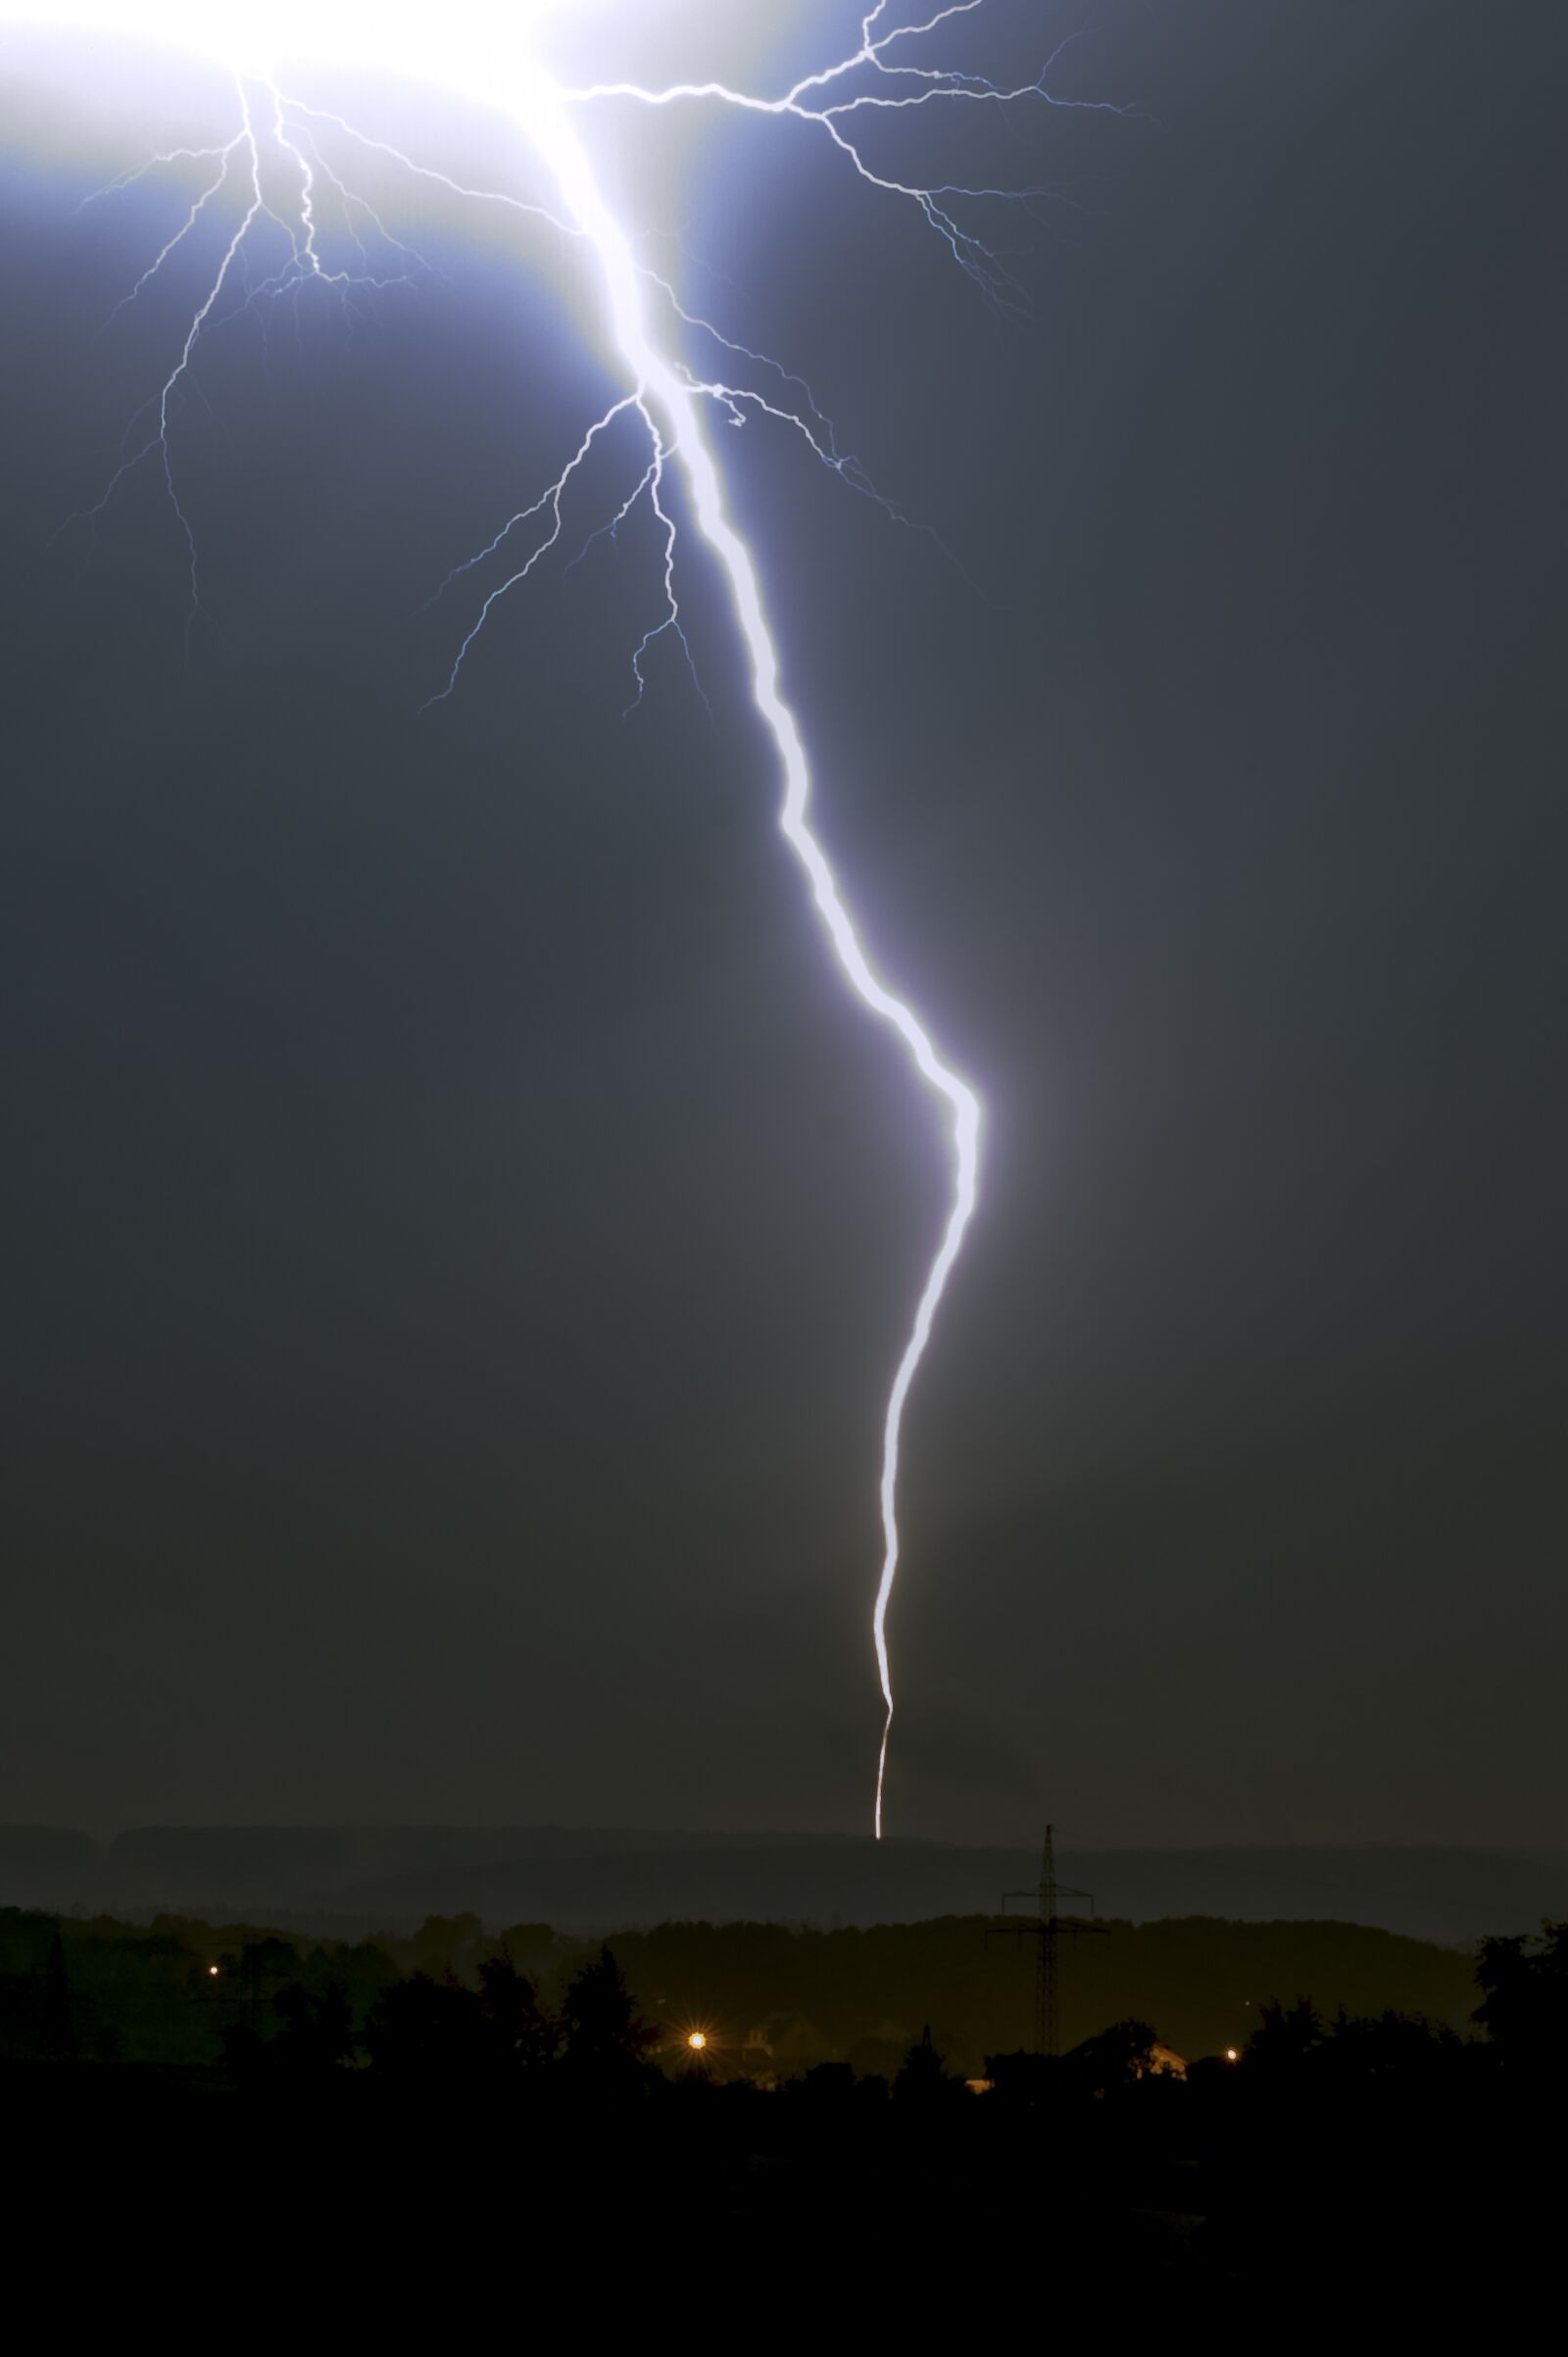 Nikon D3 sample photo. Storm, lightning, clouds photography